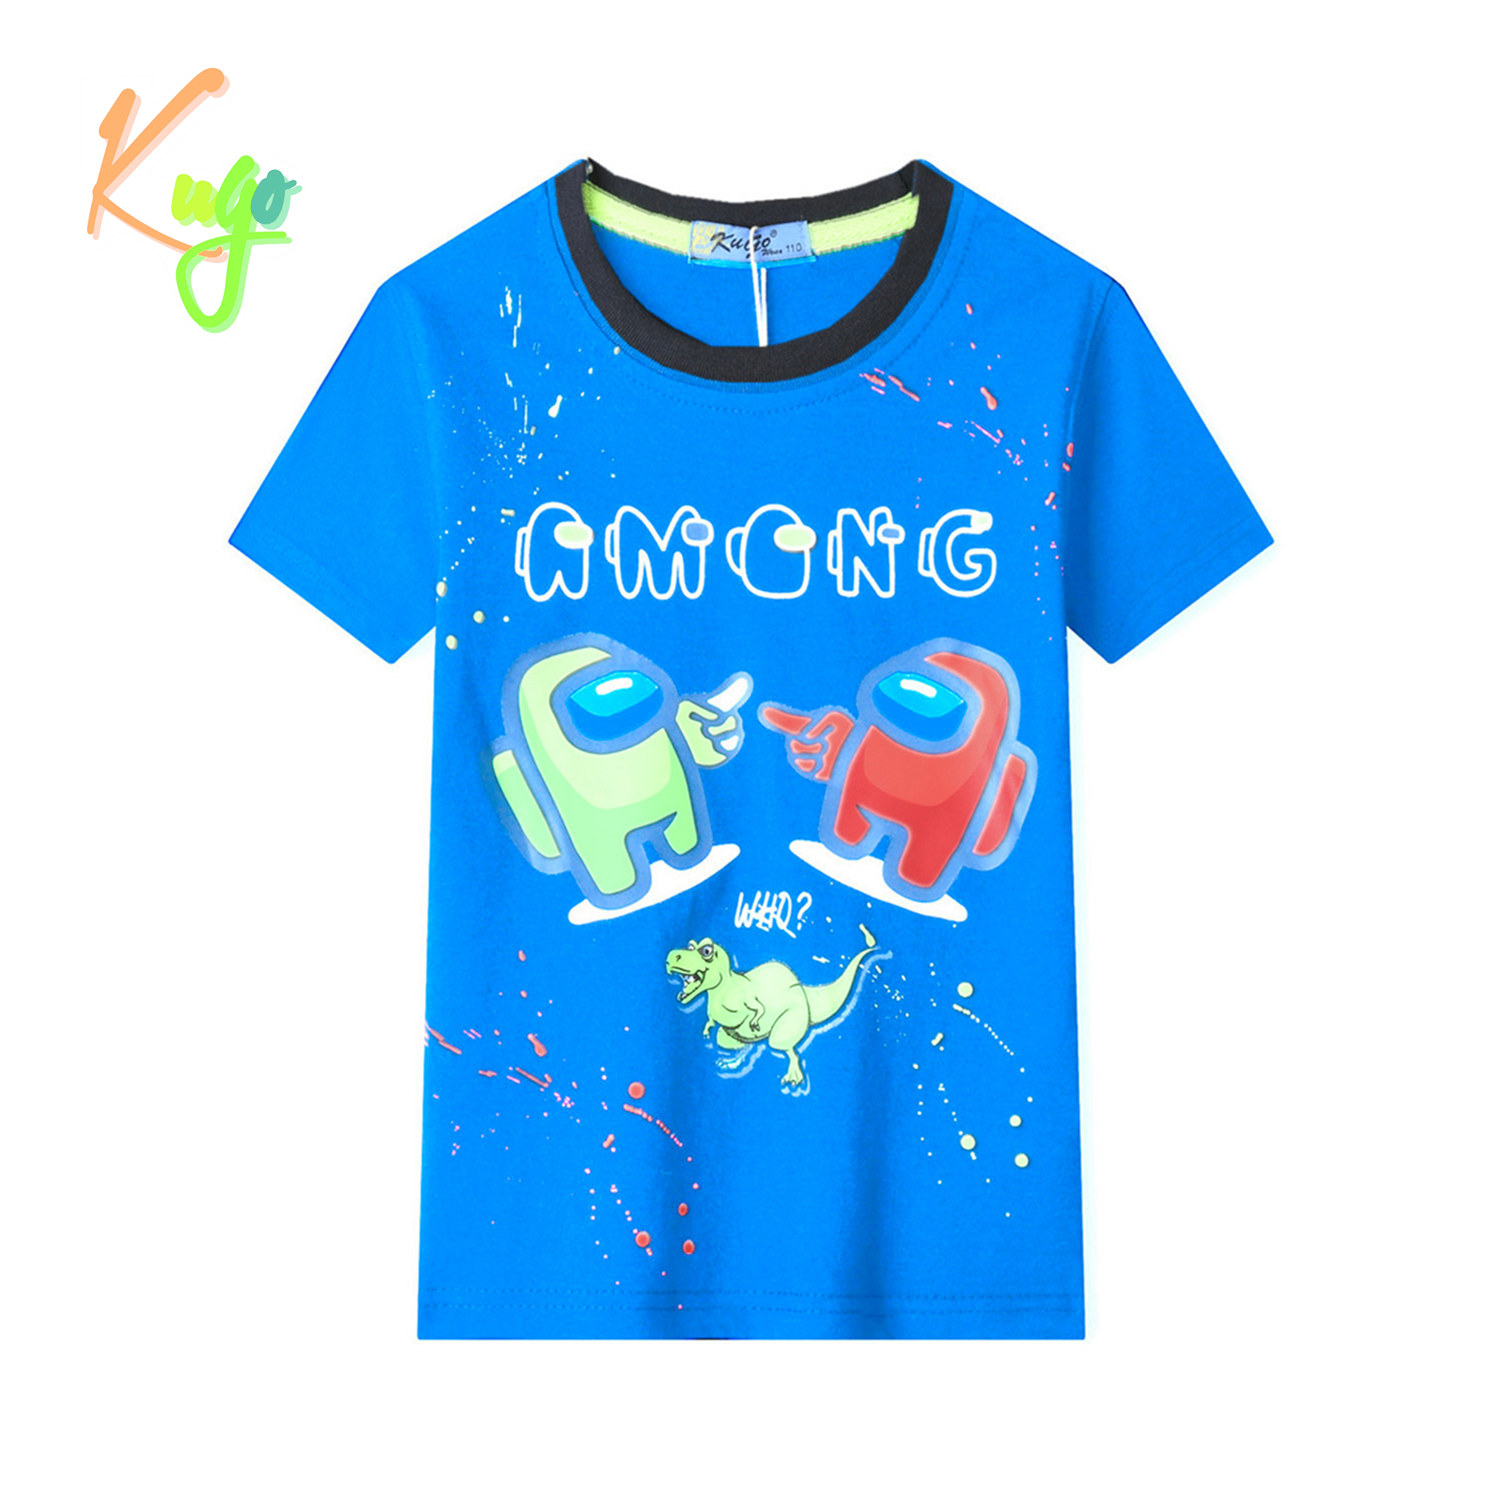 Chlapecké tričko - KUGO TM9202, tyrkysová Barva: Tyrkysová, Velikost: 104